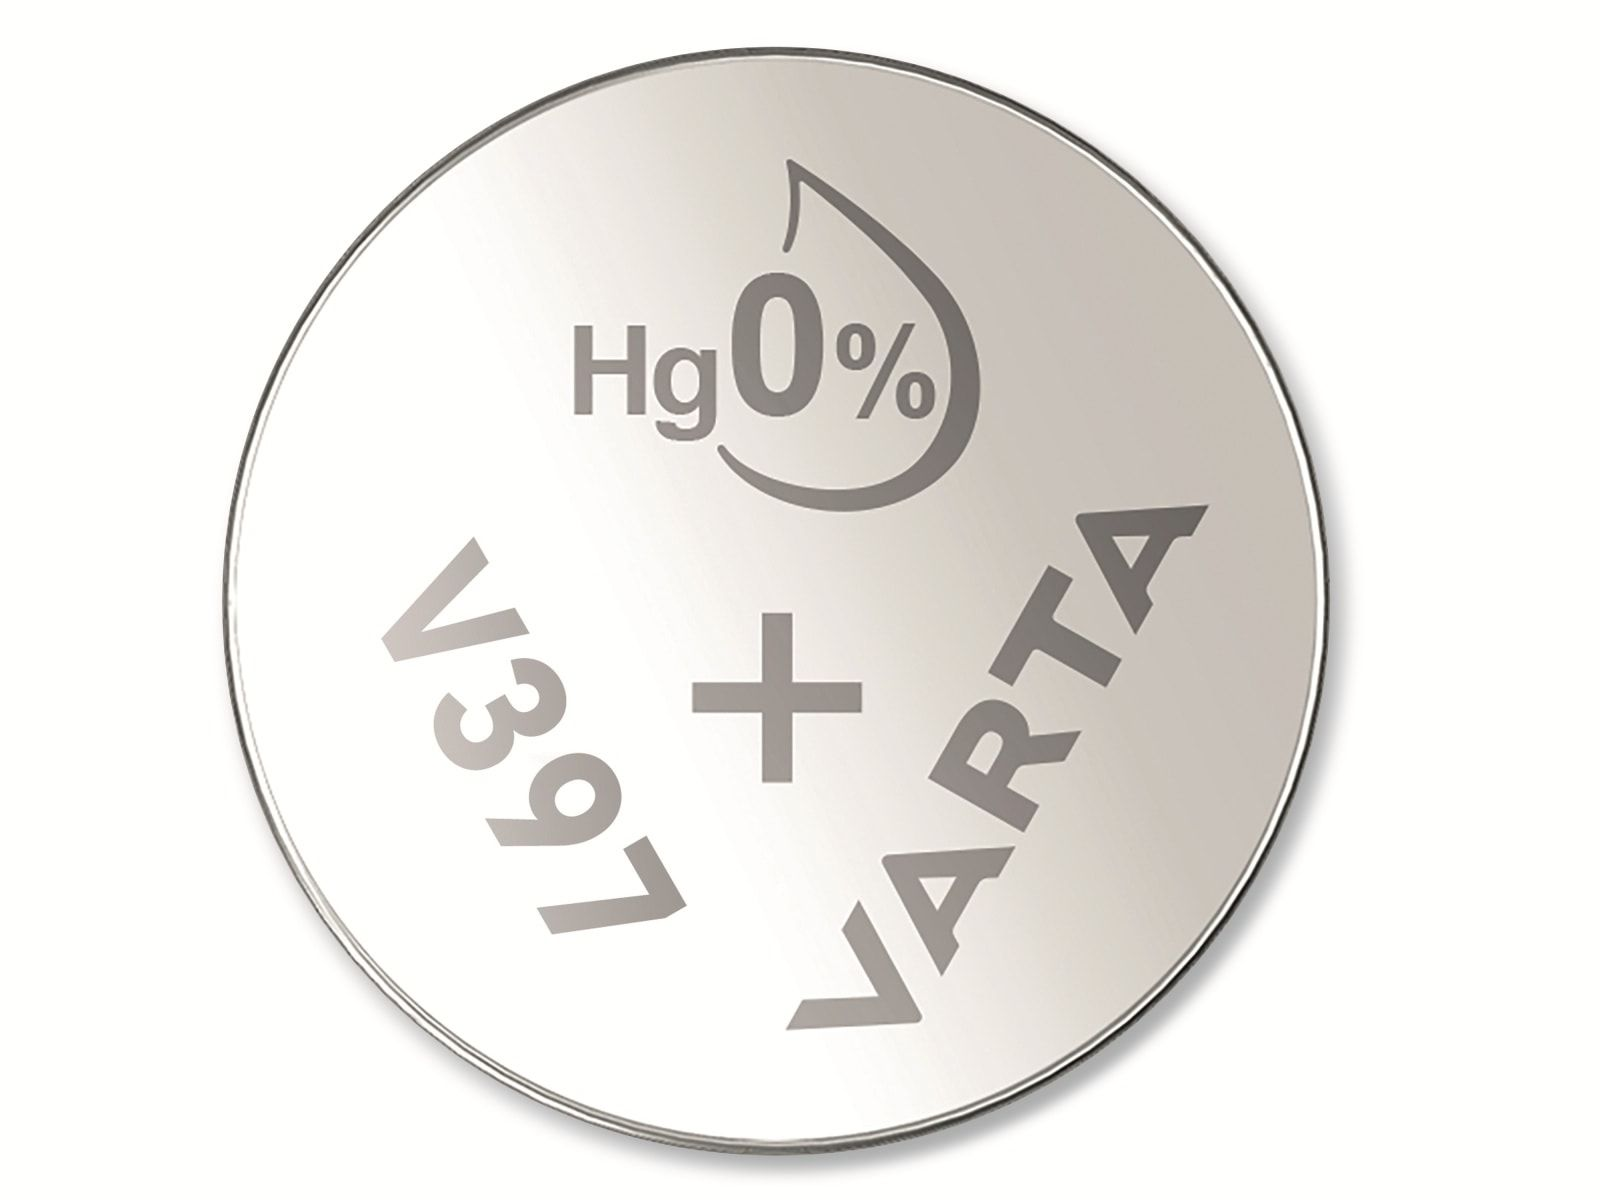 VARTA Knopfzelle Silver Oxide, 397 1.55V, Knopfzelle Silberoxid SR59, Stück 10